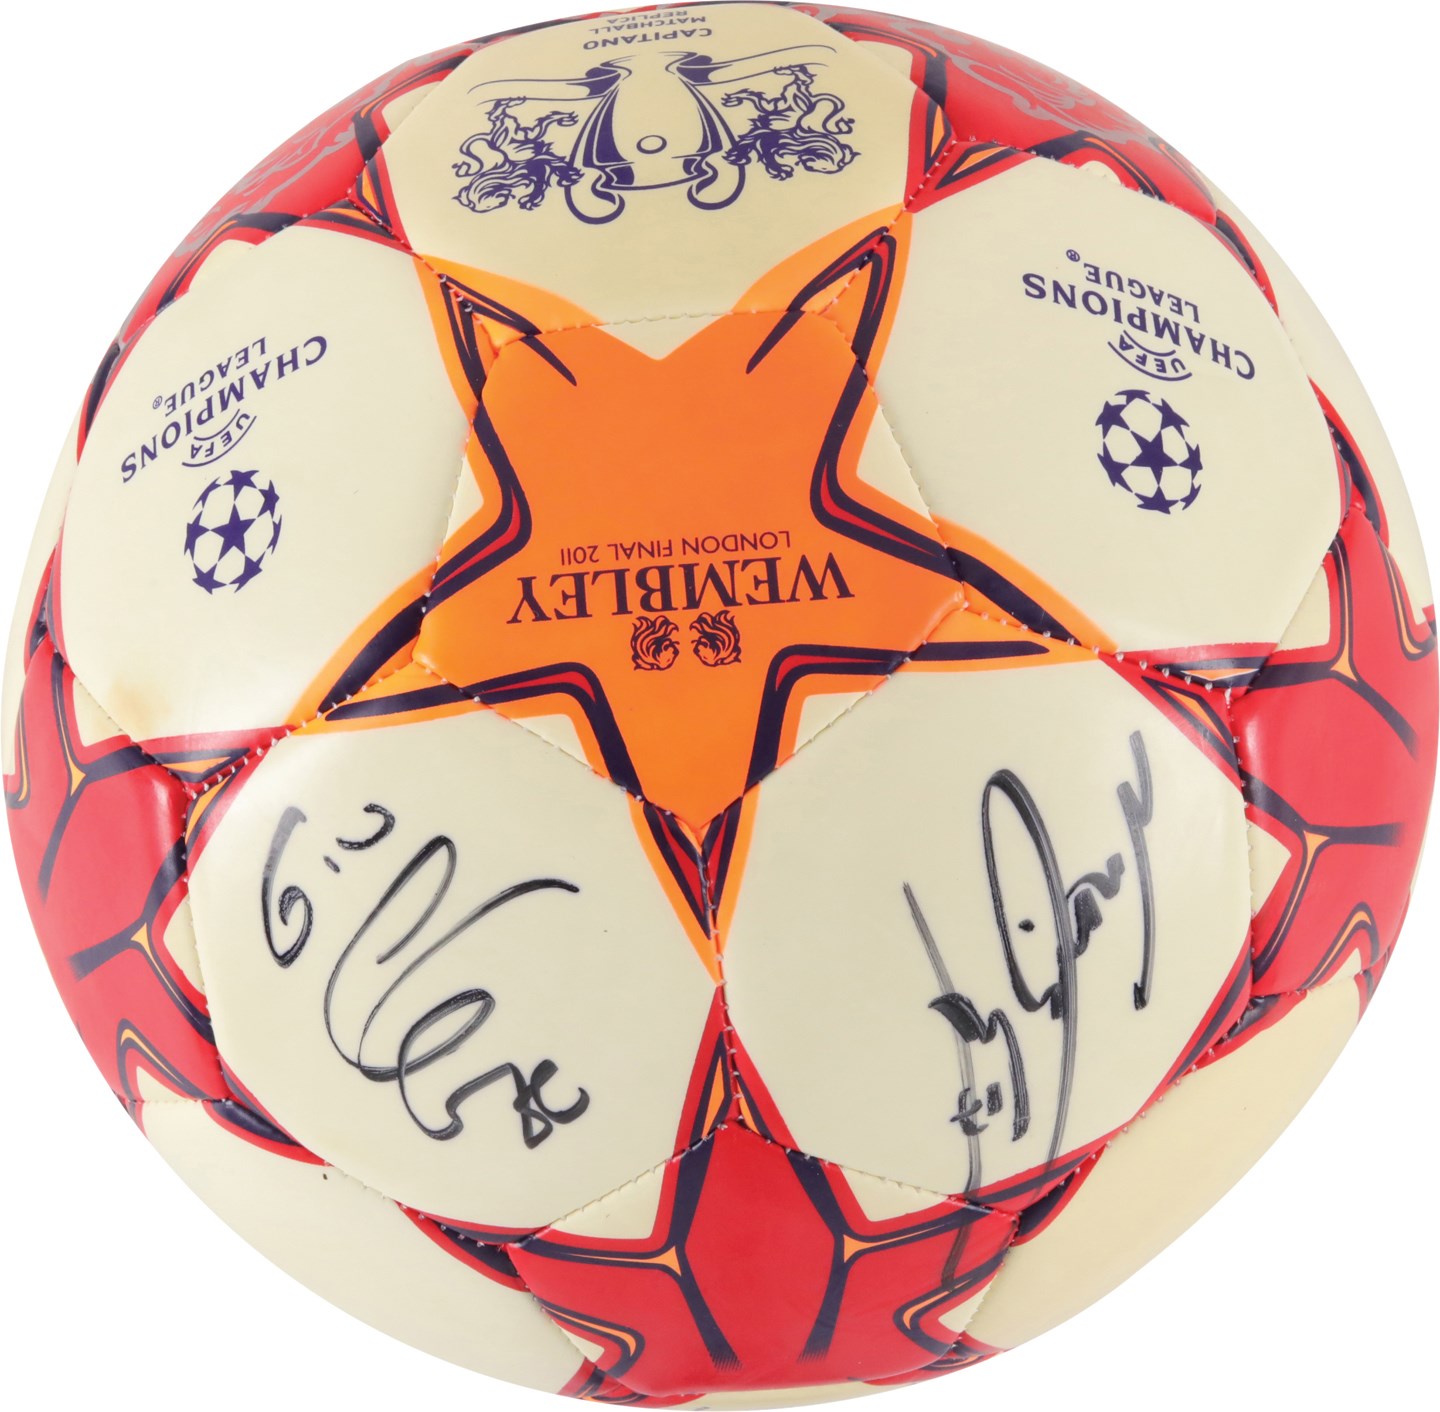 - 2011 Manchester United Signed Soccer Ball (PSA & JSA)